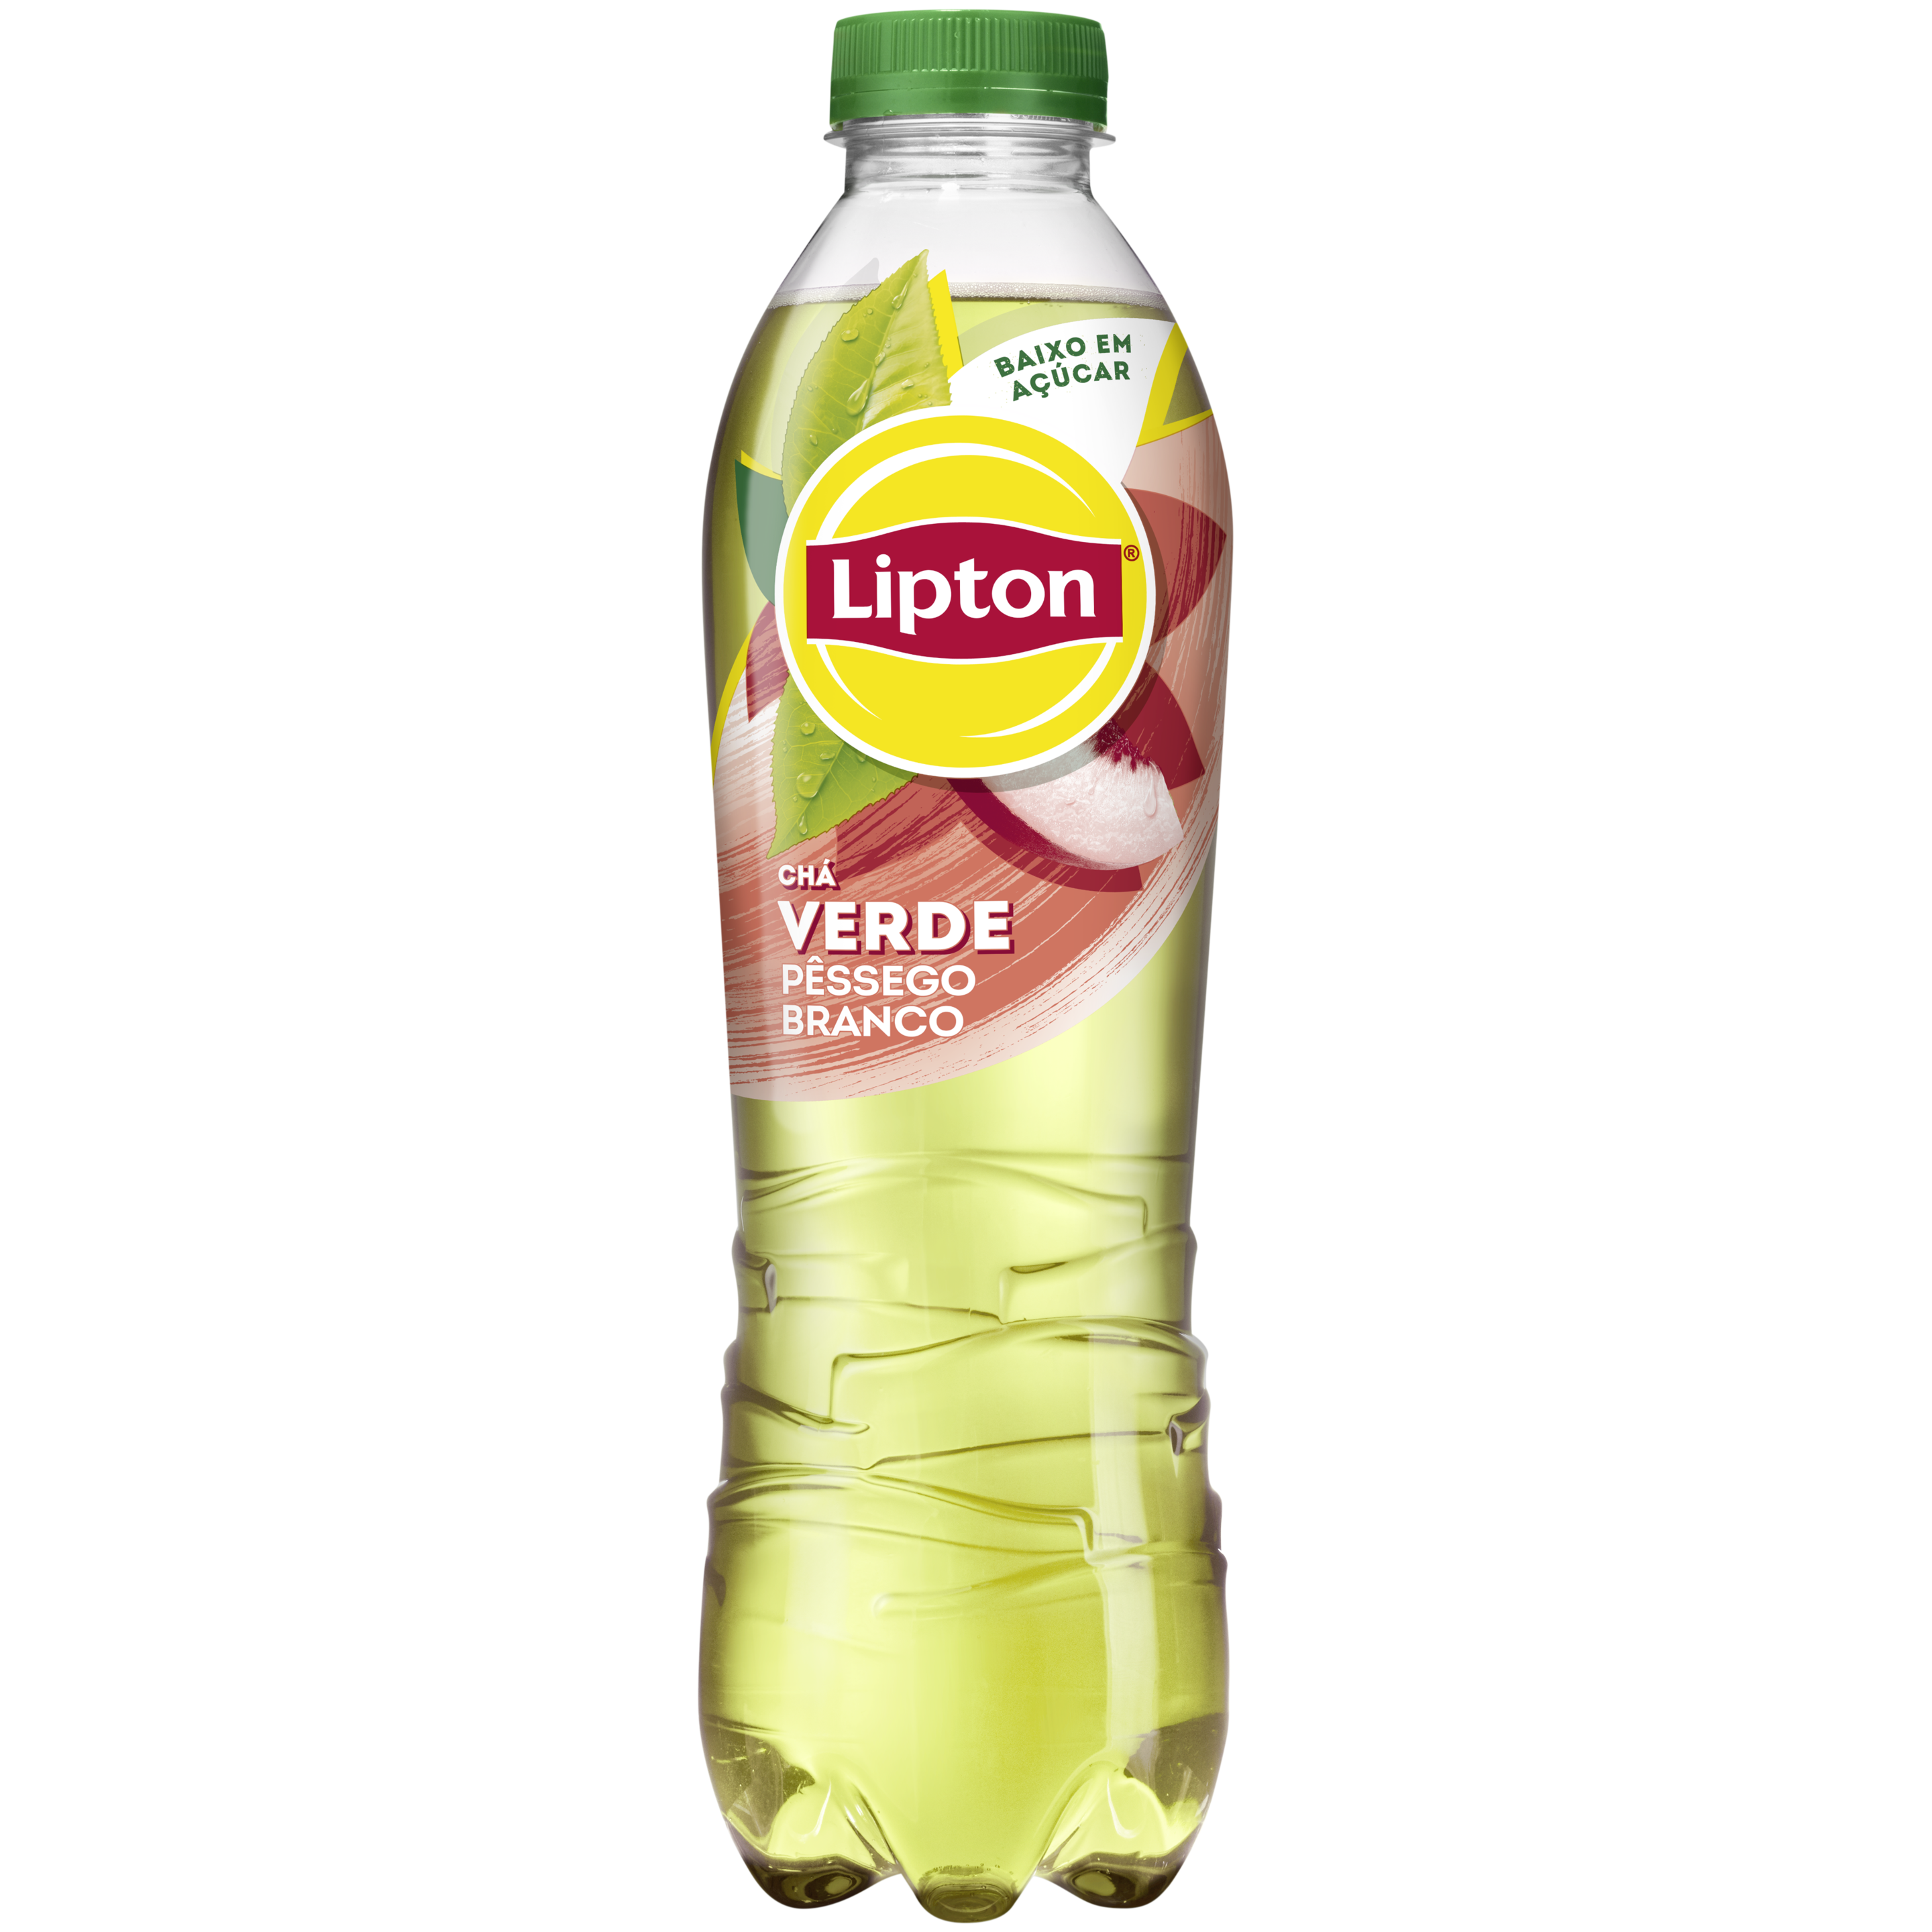 Lipton Chá Verde Pêssego Branco 1L packshot